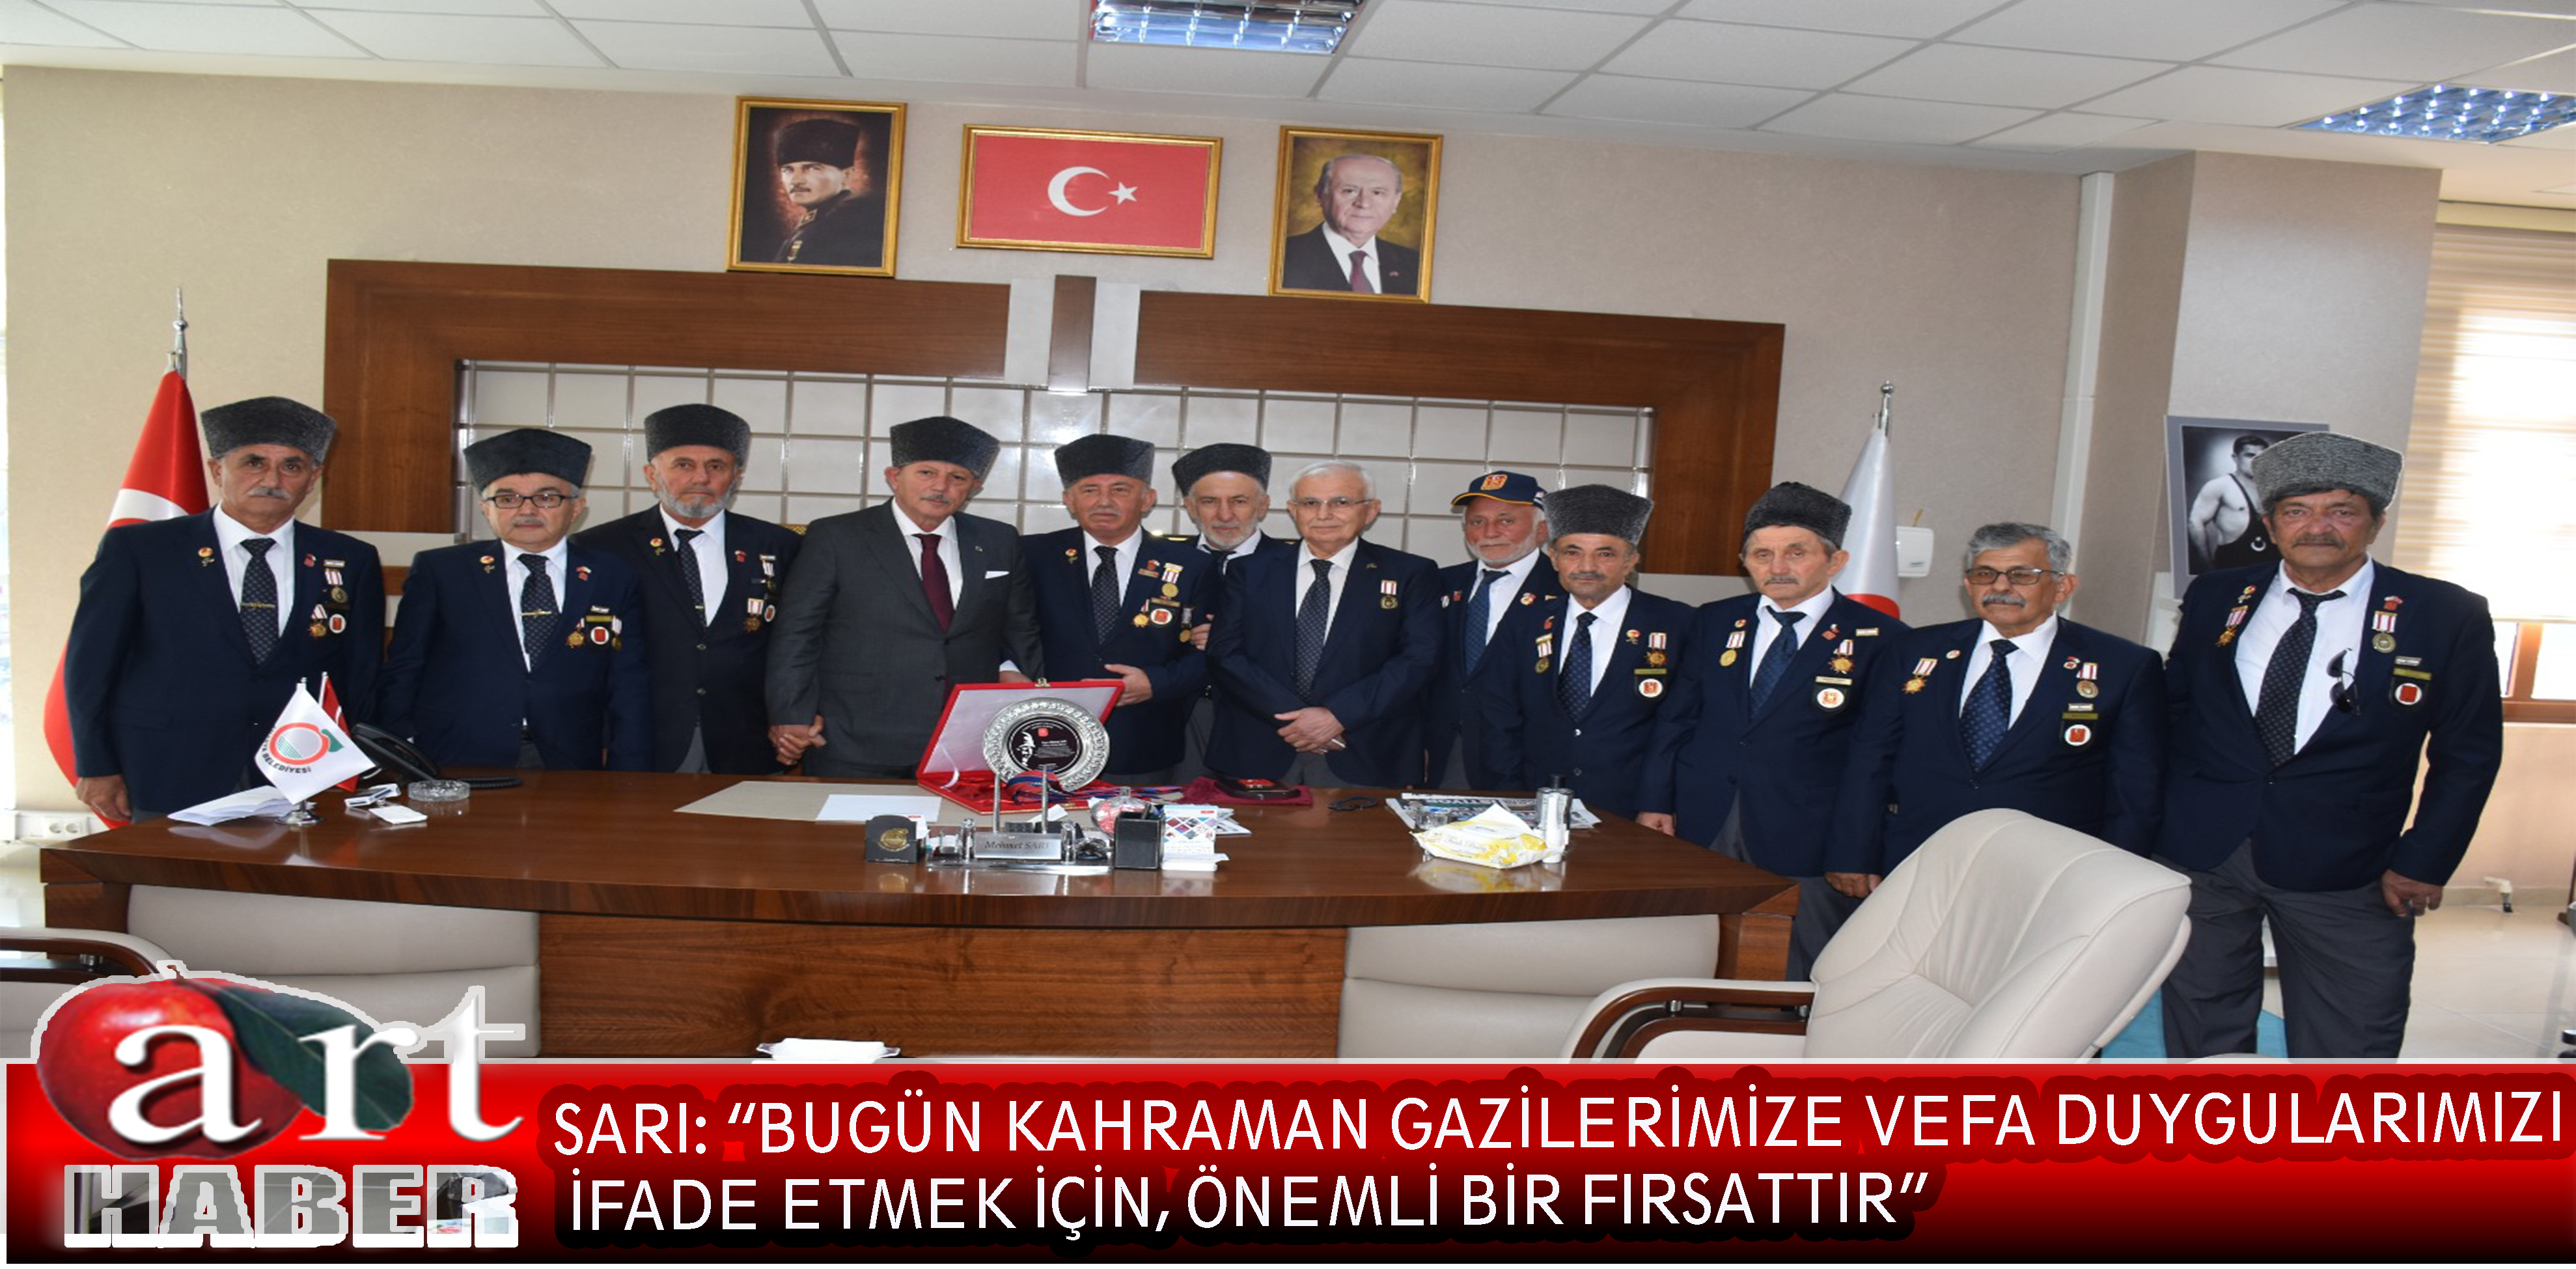 Amasya Belediye Başkanı Mehmet Sarı, 19 Eylül Gaziler Günü nedeniyle bir kutlama mesajı yayımladı.